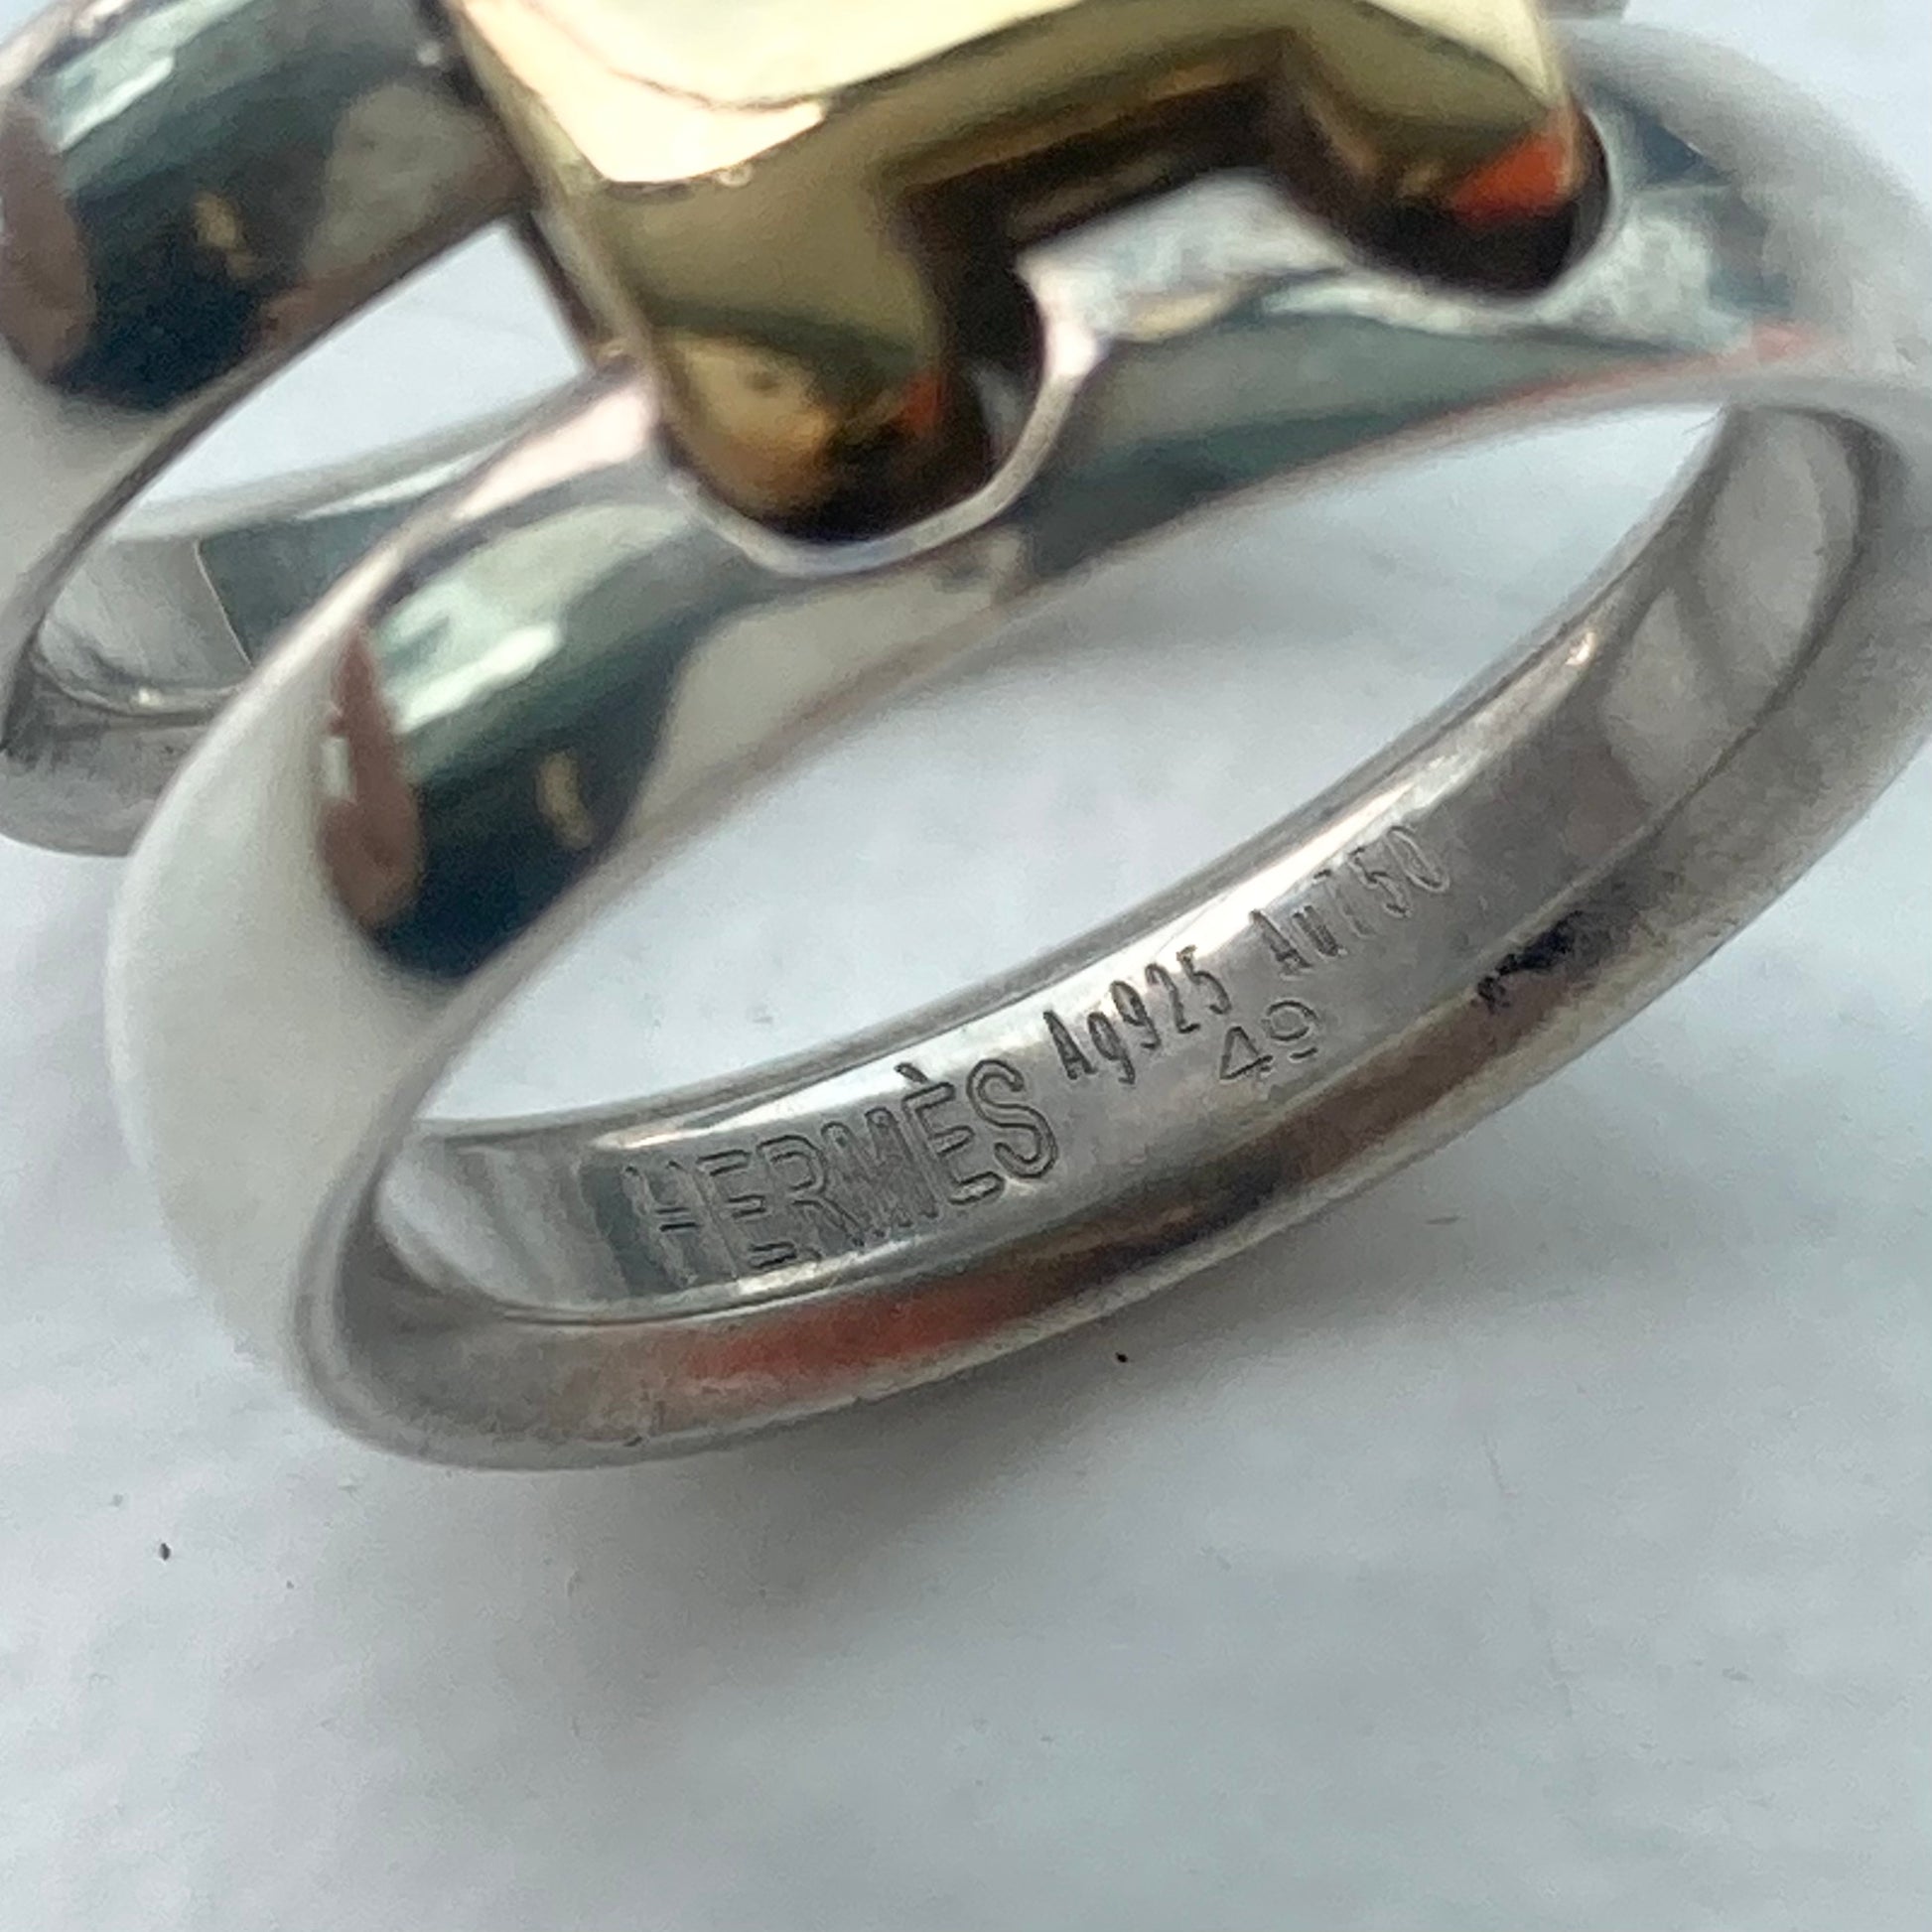 Hermes Olympe ring vintage SV925 AU750 エルメス オランプリング ...